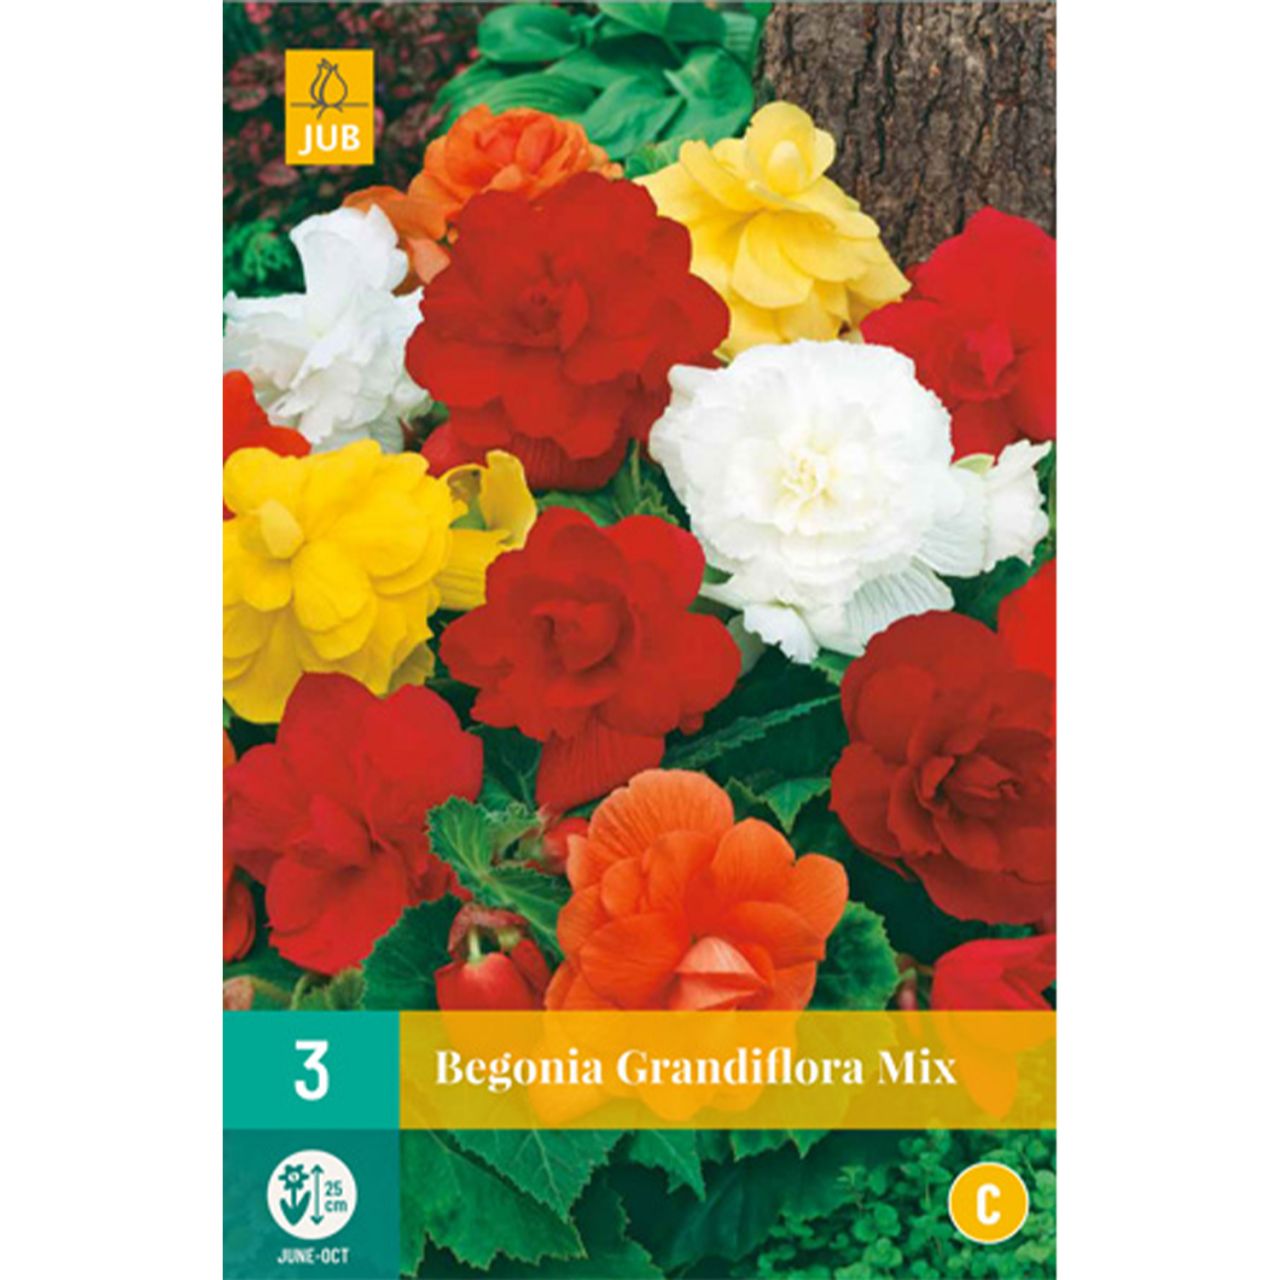 Kategorie <b>Frühlings-Blumenzwiebeln </b> - Begonie 'Grandiflora Mischung' - 3 Stück - Begonia Grandiflora